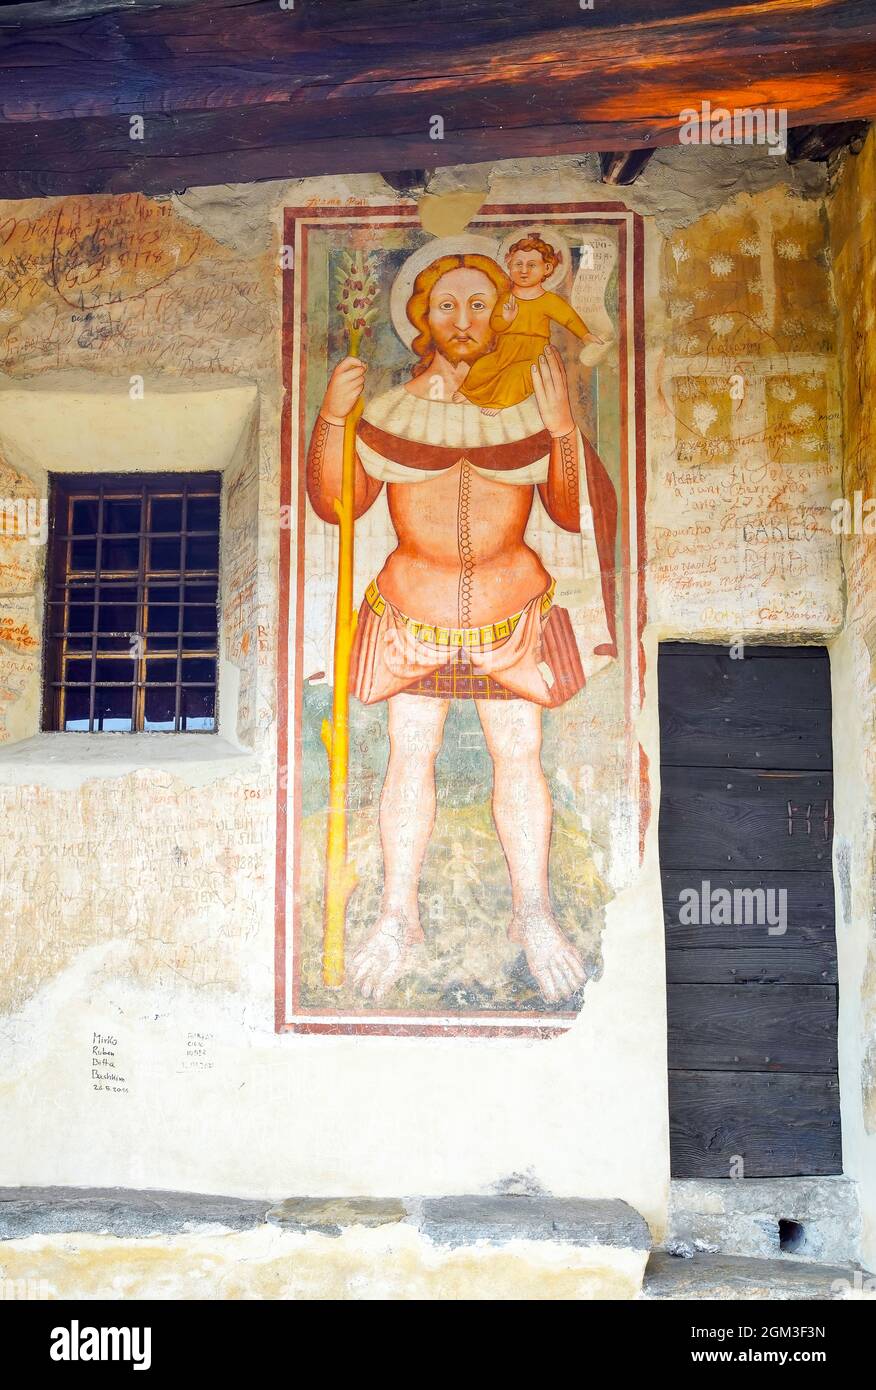 San Cristoforo (Christopher), parmi les plus anciennes fresques de l'église romane San Bernardo, Monte Carasso, canton du Tessin, Suisse. Banque D'Images